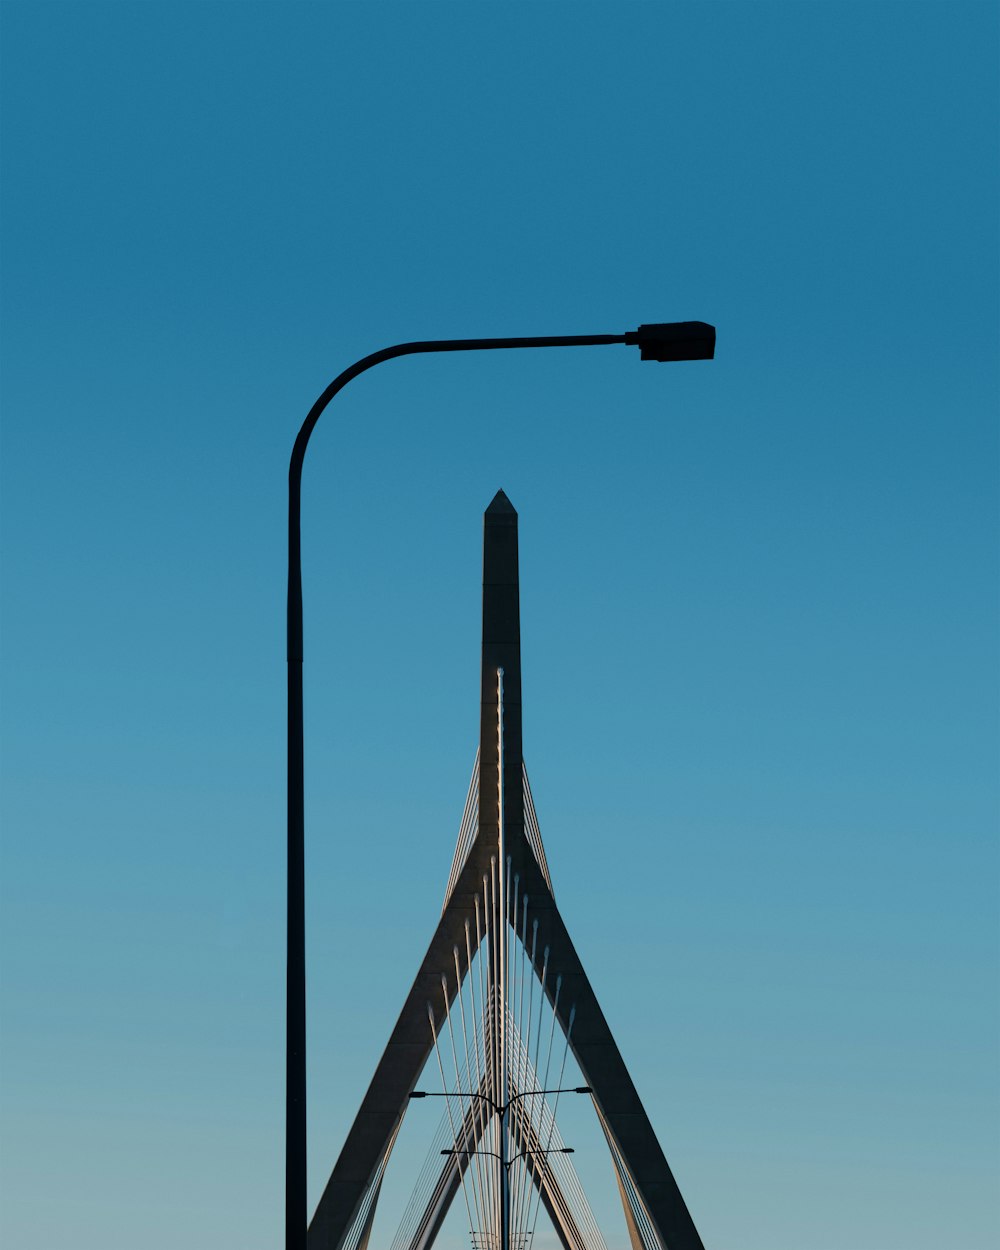 eine Straßenlaterne an einem Mast mit blauem Himmel im Hintergrund